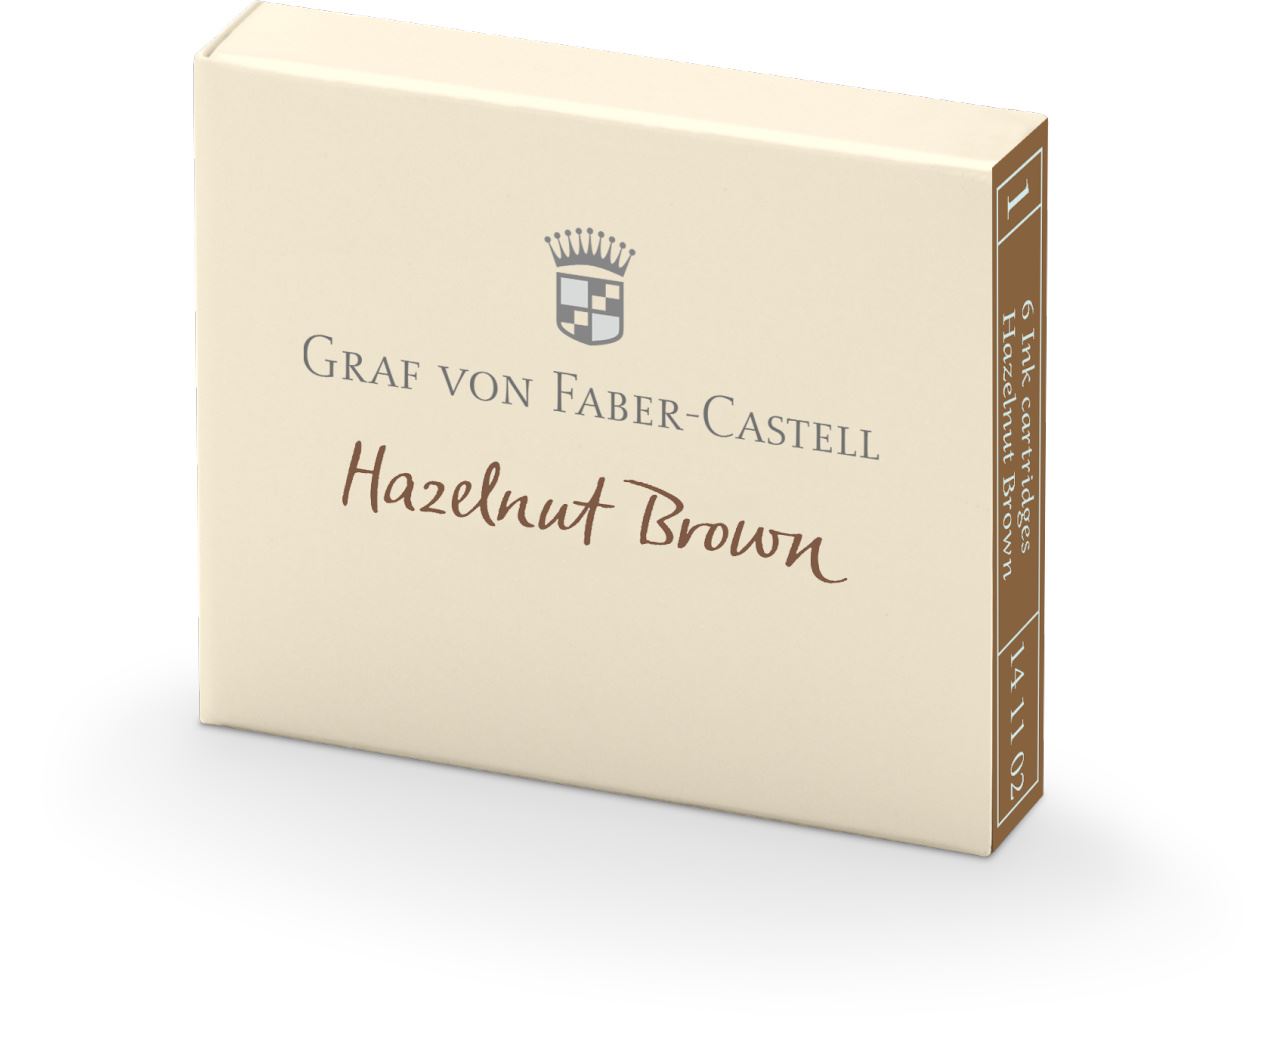 Graf-von-Faber-Castell - 6 ink cartridges, Hazelnut Brown